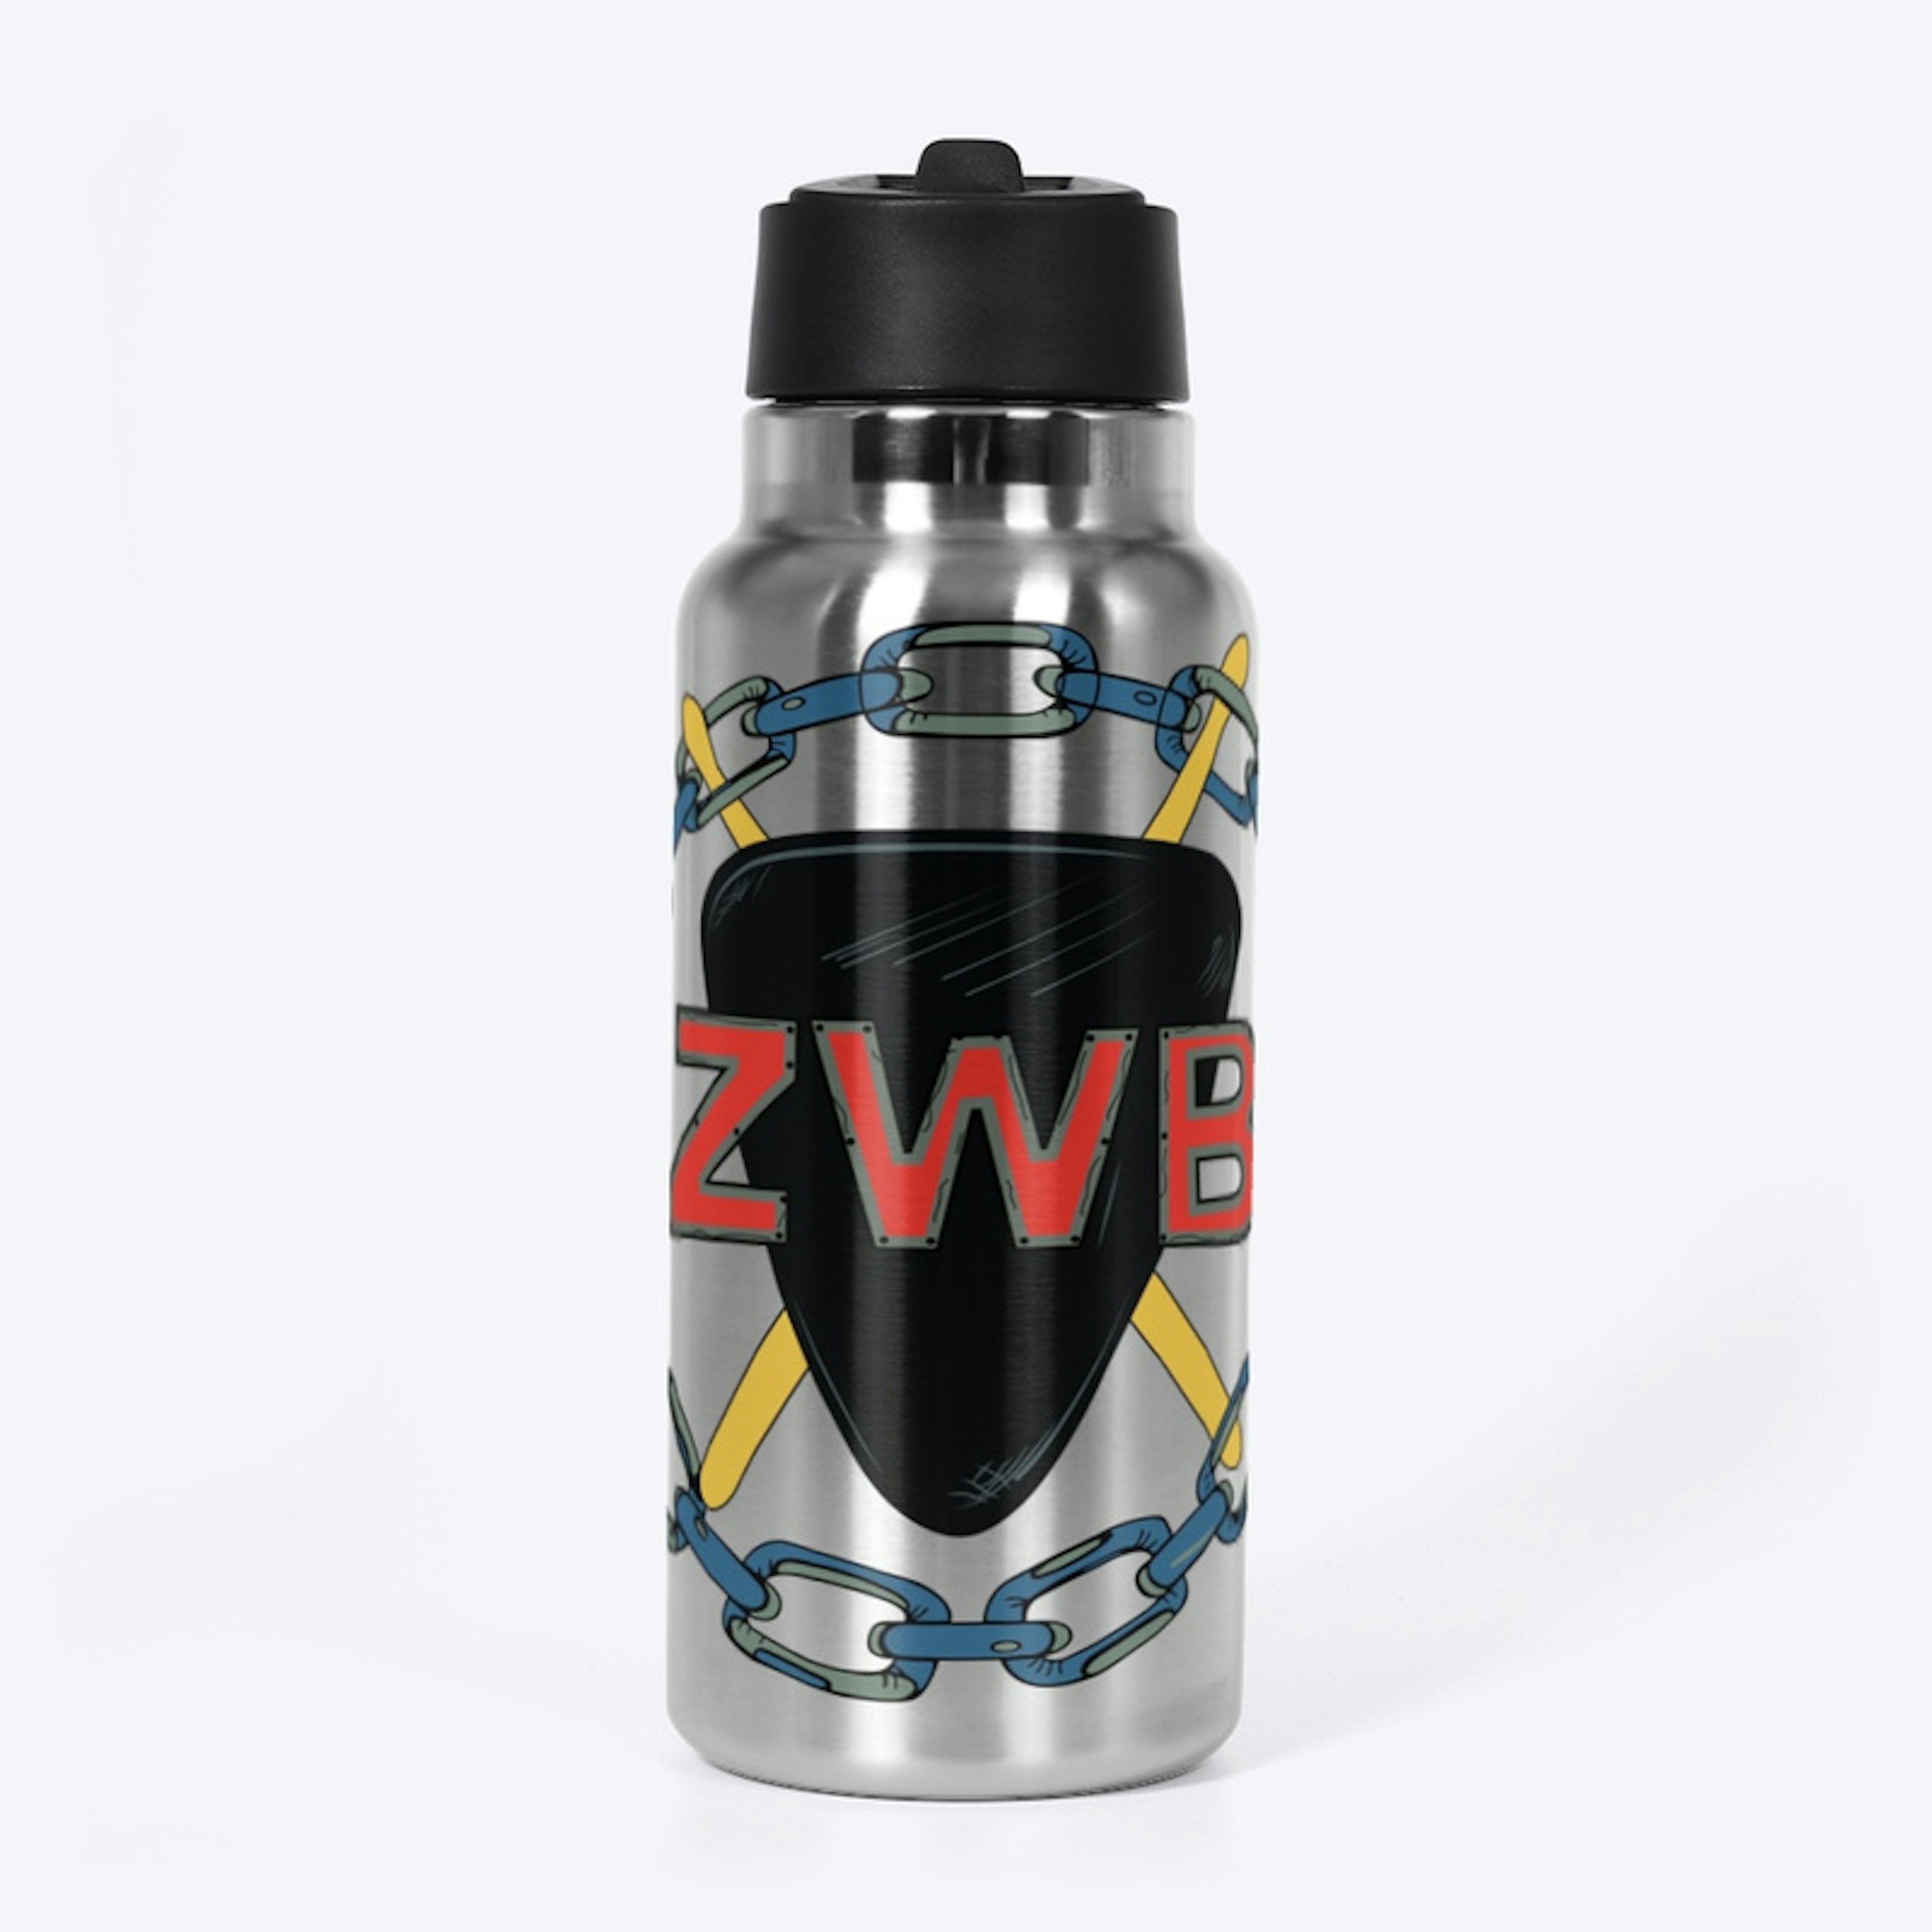 ZWB Essentials